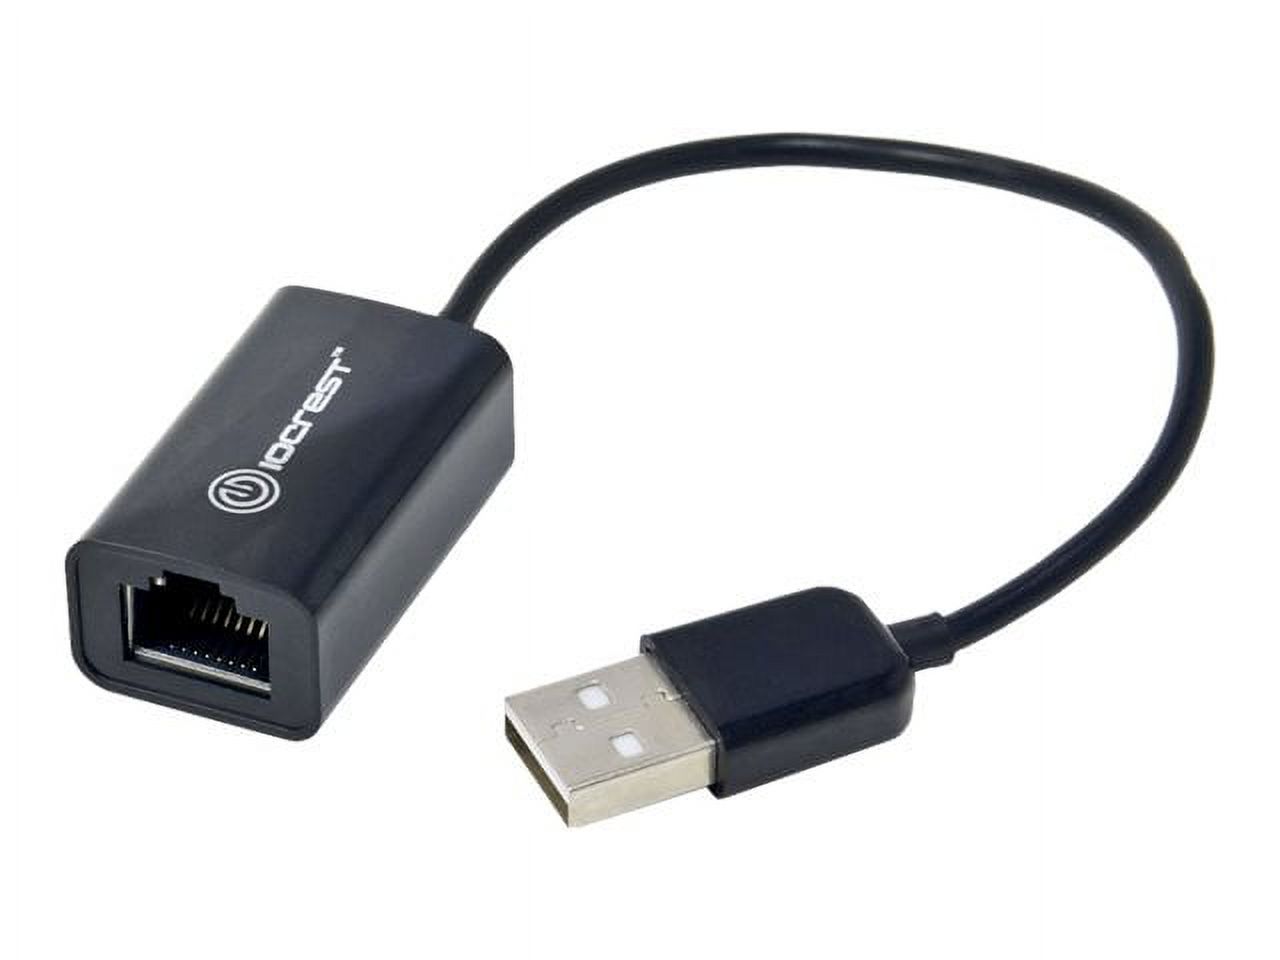 IOCrest USB 2.0 10/100Mbps LAN Ethernet RJ45 Adapter Connector Black - image 5 of 6